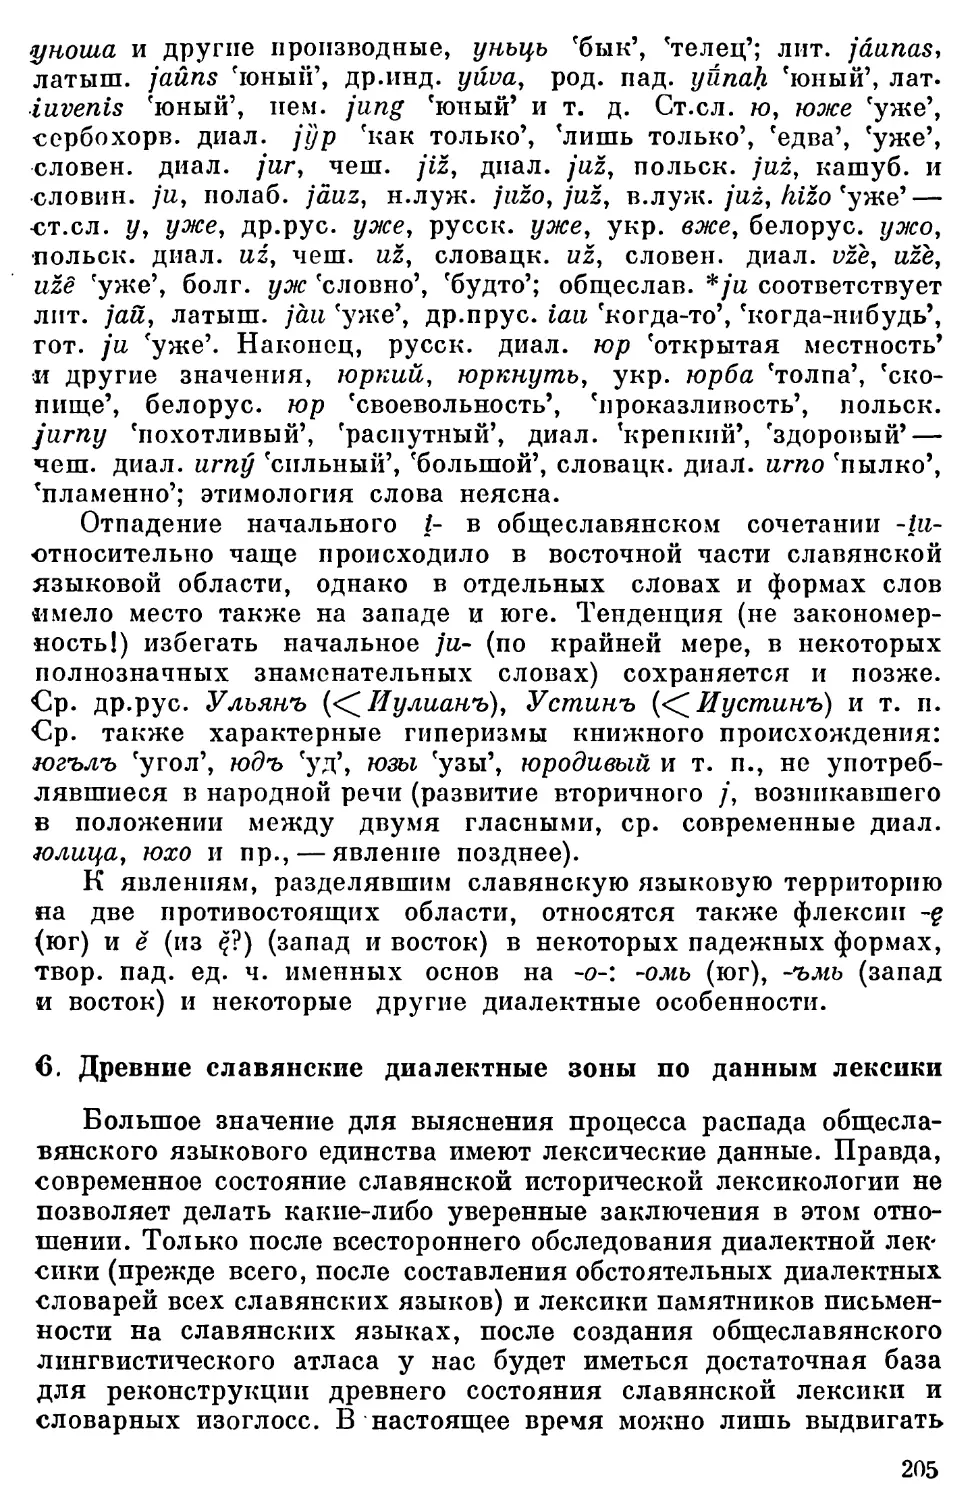 6. Древние славянские диалектные зоны по данным лексики